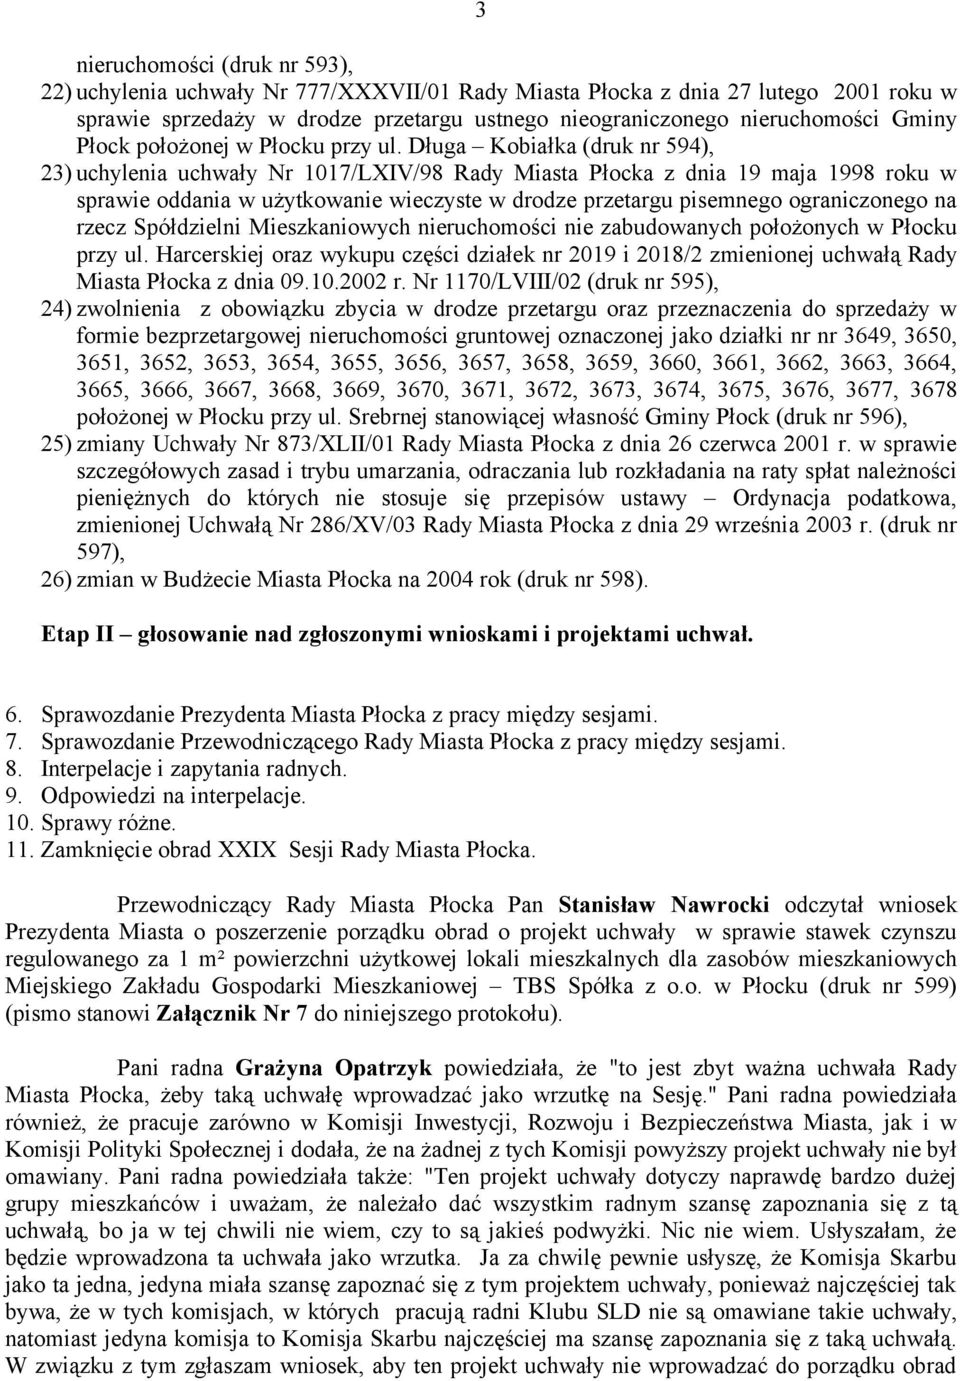 Długa Kobiałka (druk nr 594), 23) uchylenia uchwały Nr 1017/LXIV/98 Rady Miasta Płocka z dnia 19 maja 1998 roku w sprawie oddania w użytkowanie wieczyste w drodze przetargu pisemnego ograniczonego na